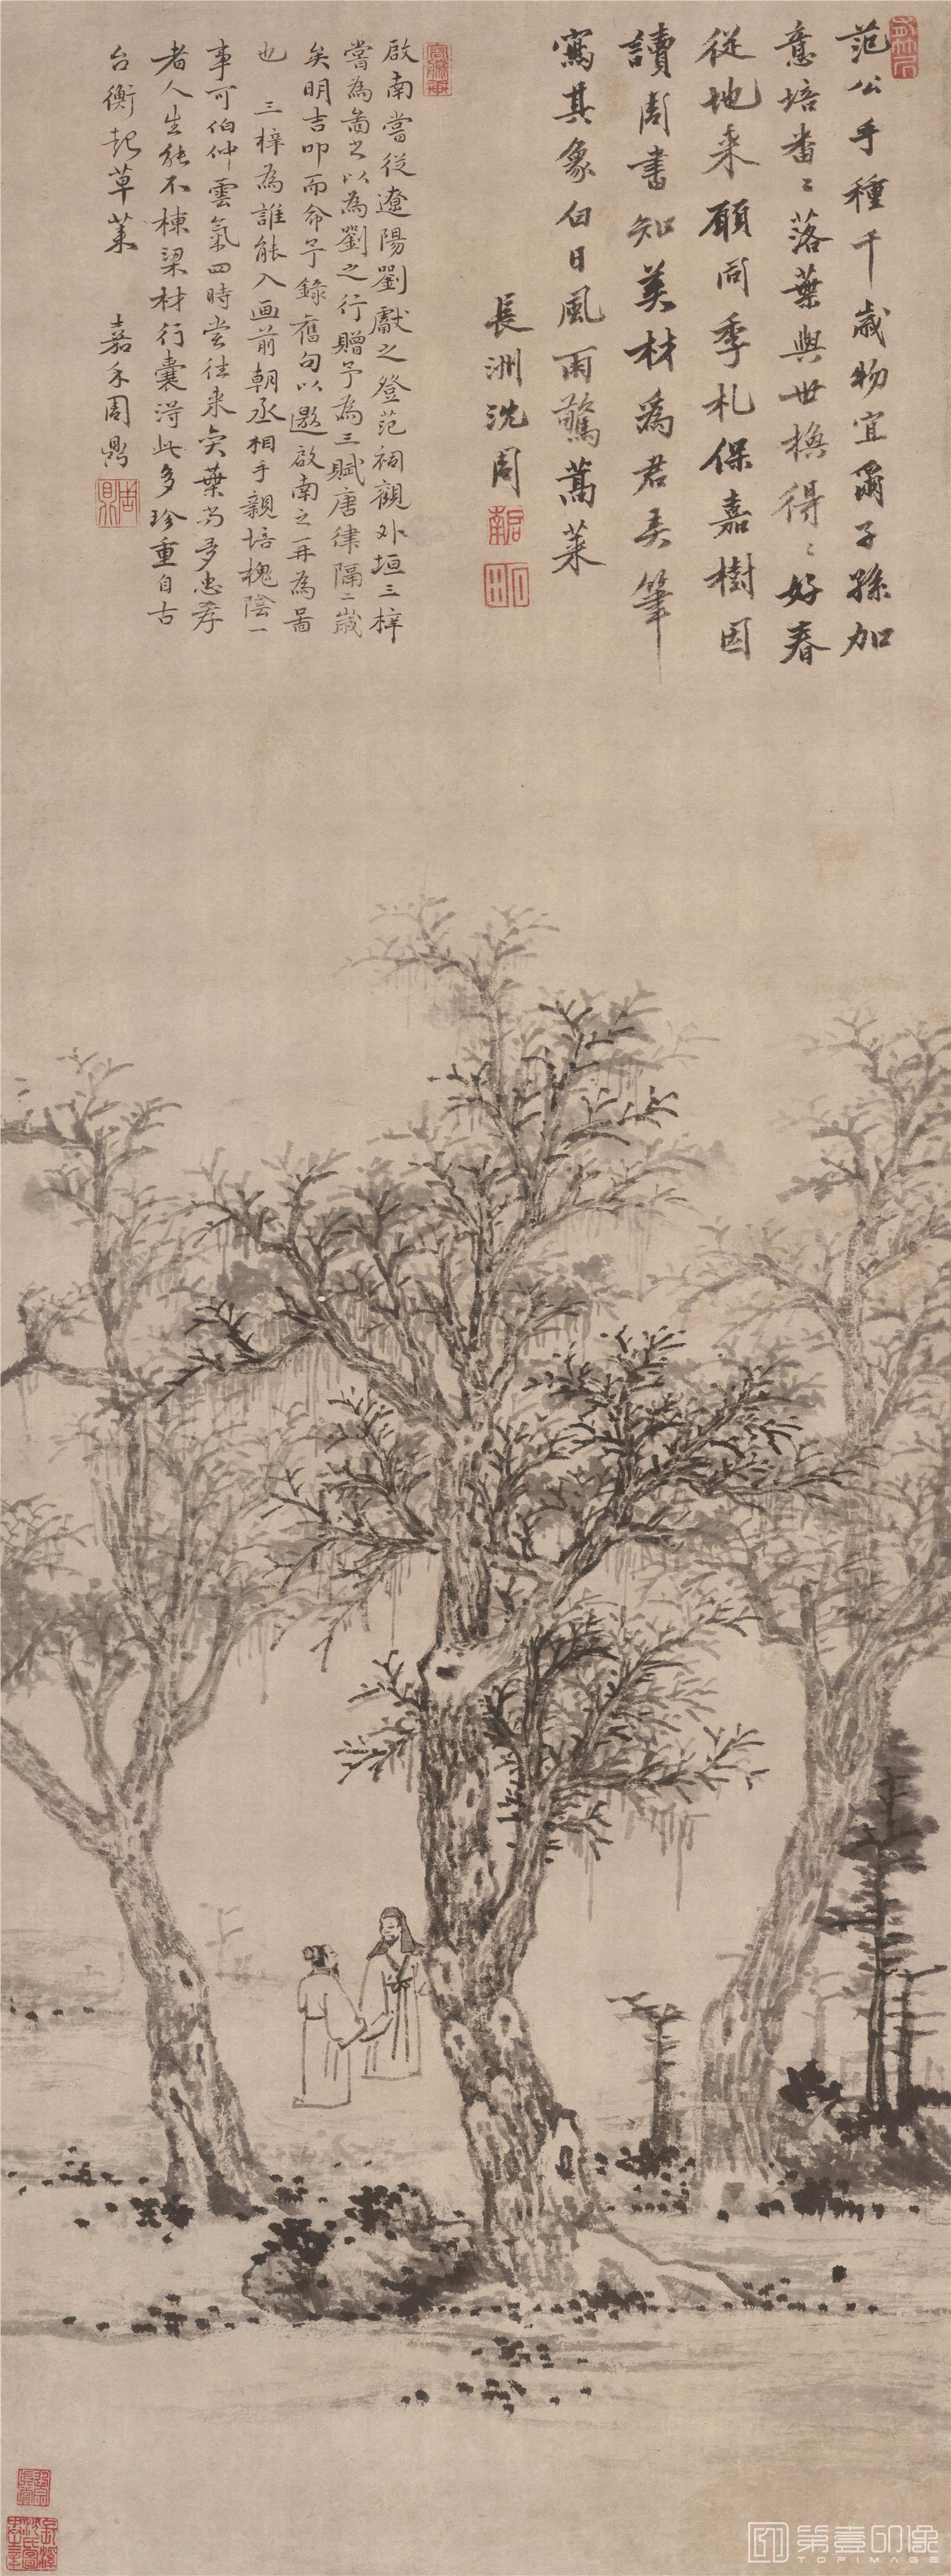 三棵梓树图轴纸本-70×189cm-沈周-国画作品-第壹印像